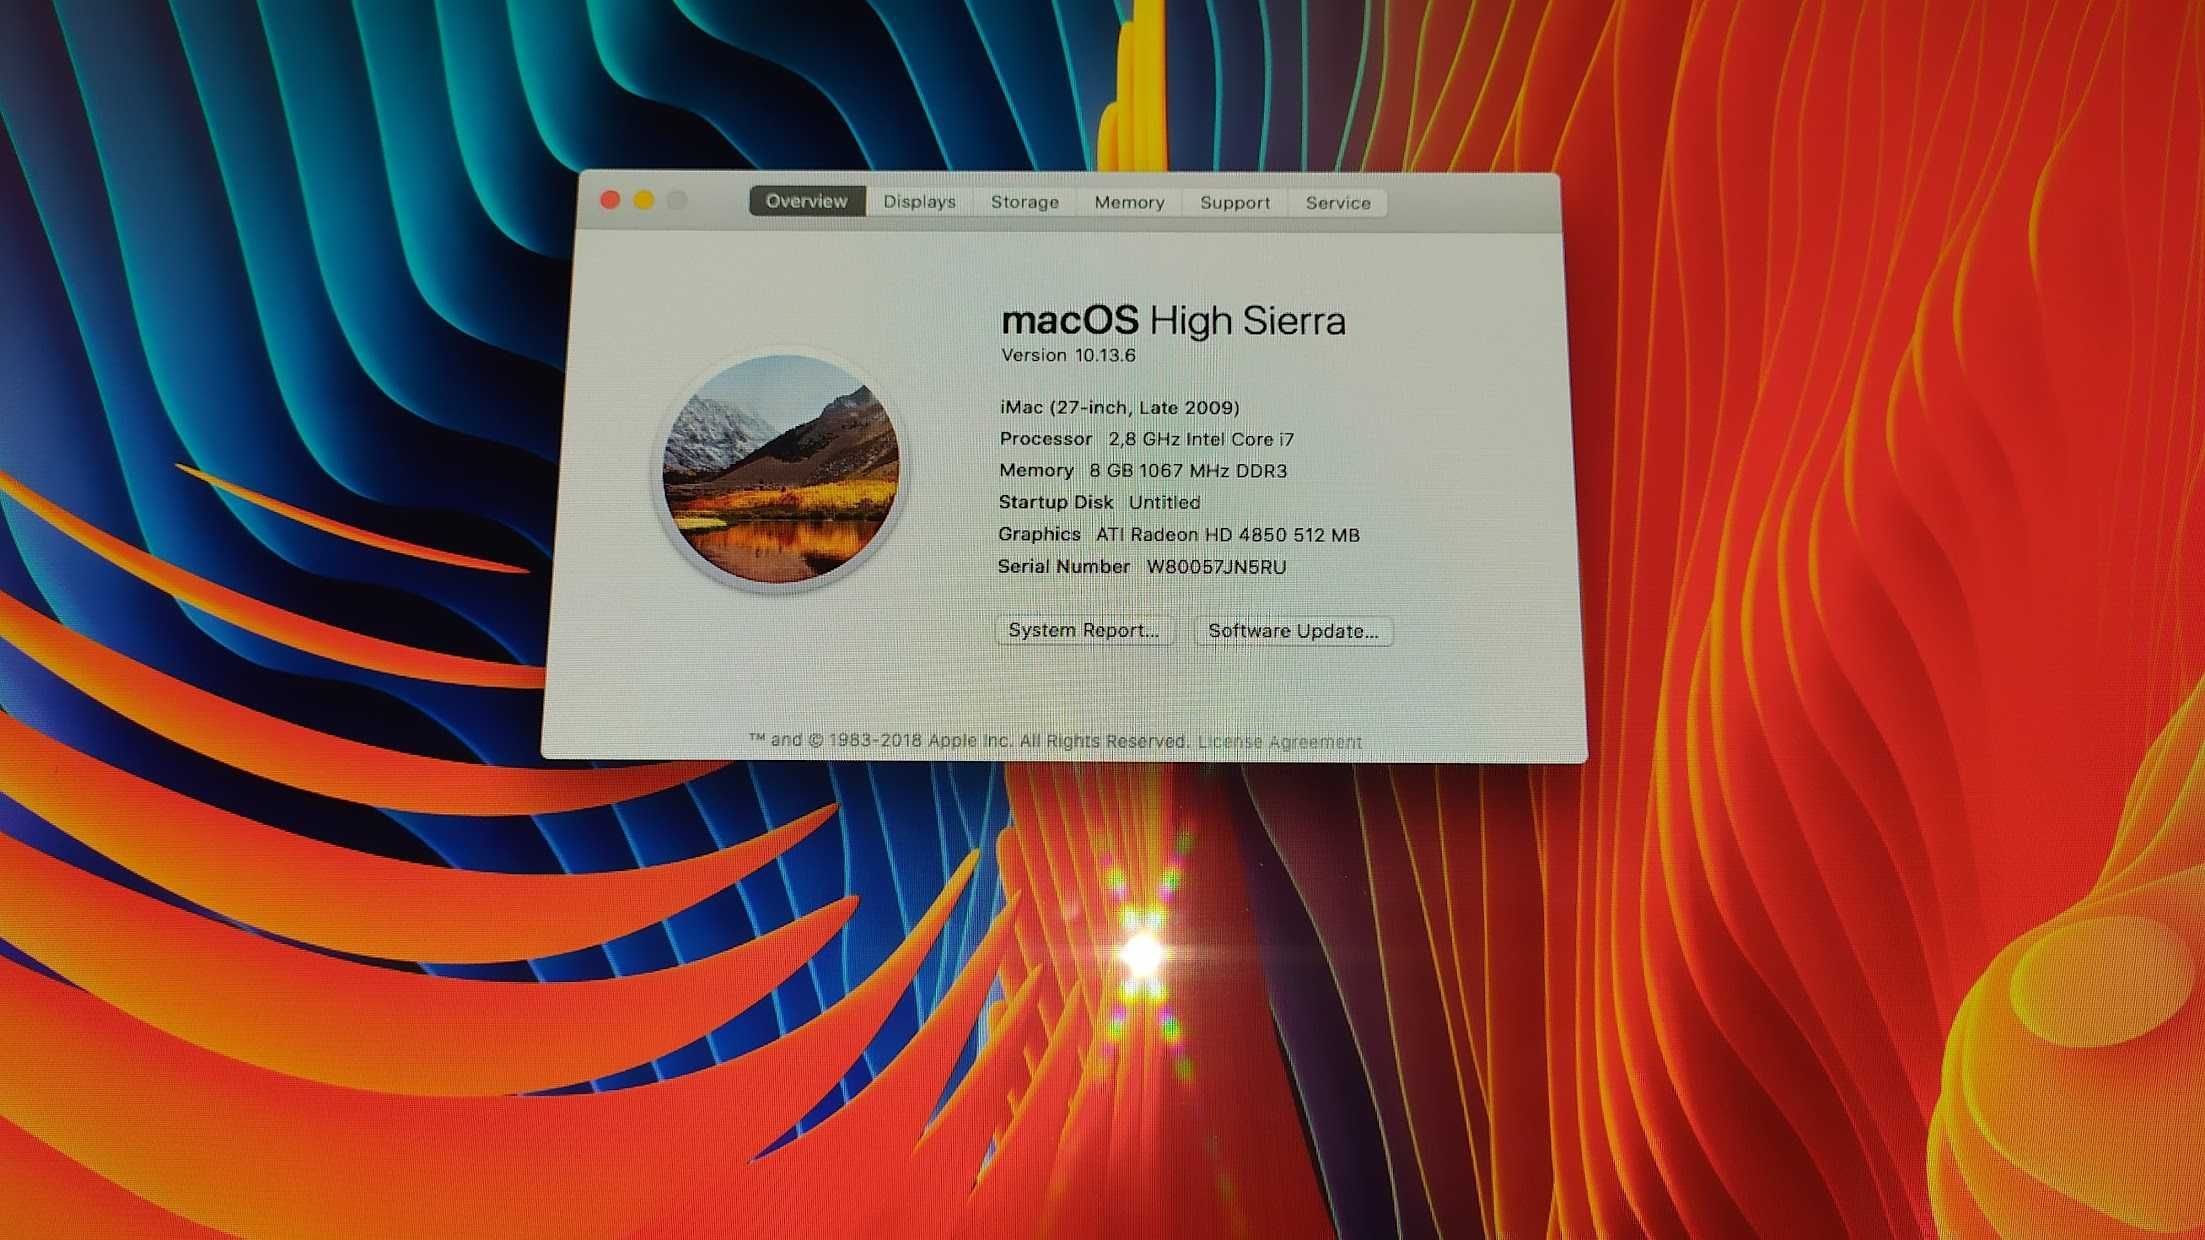 PC all in one Apple Imac 27inch,i5,1Terra,8 g ram,Wind10+OS HighSierra